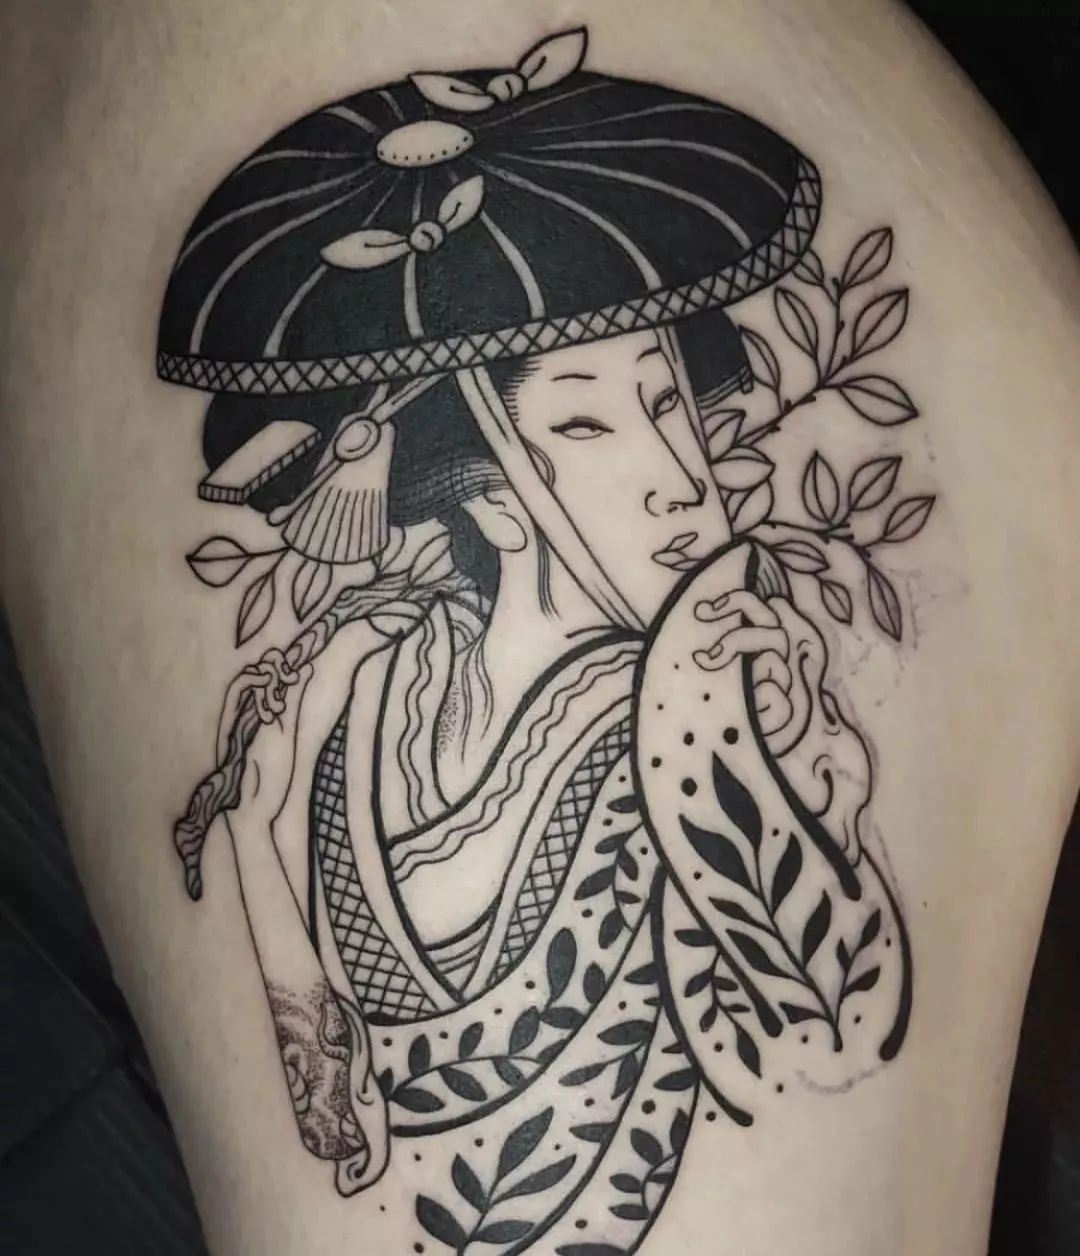 聊一聊日本的纹身文化